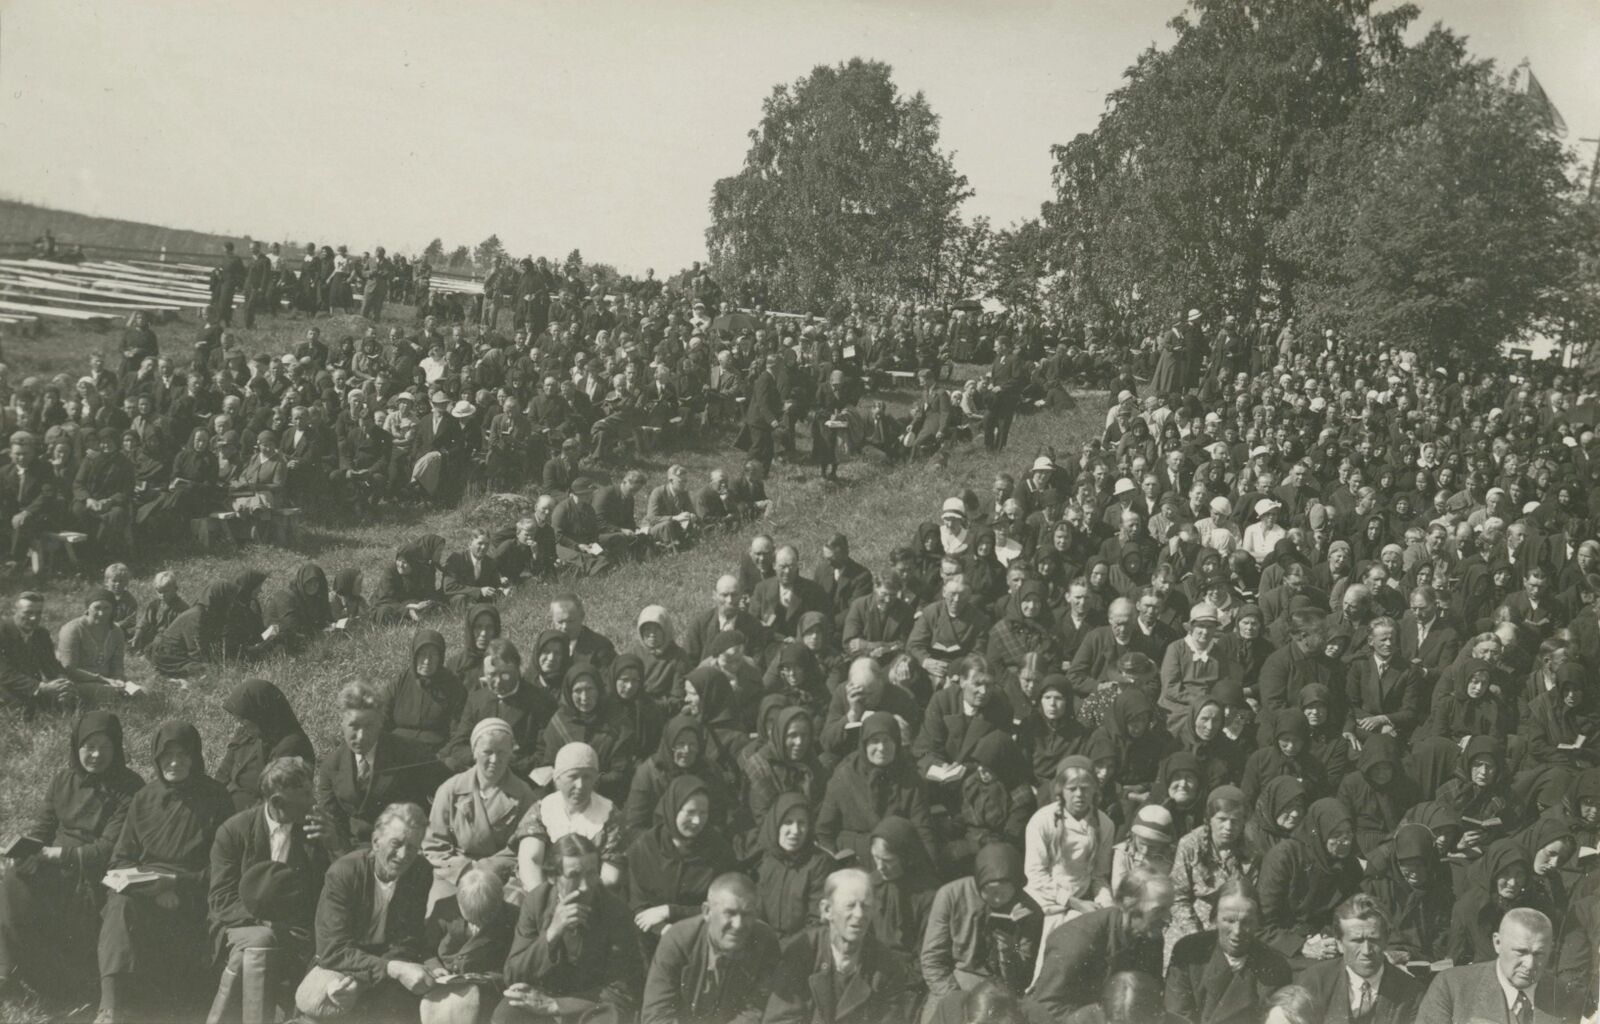 Herättäjäjuhlat pidettiin 1935 Kiuruvedellä. (Kiuruveden kaupunki)